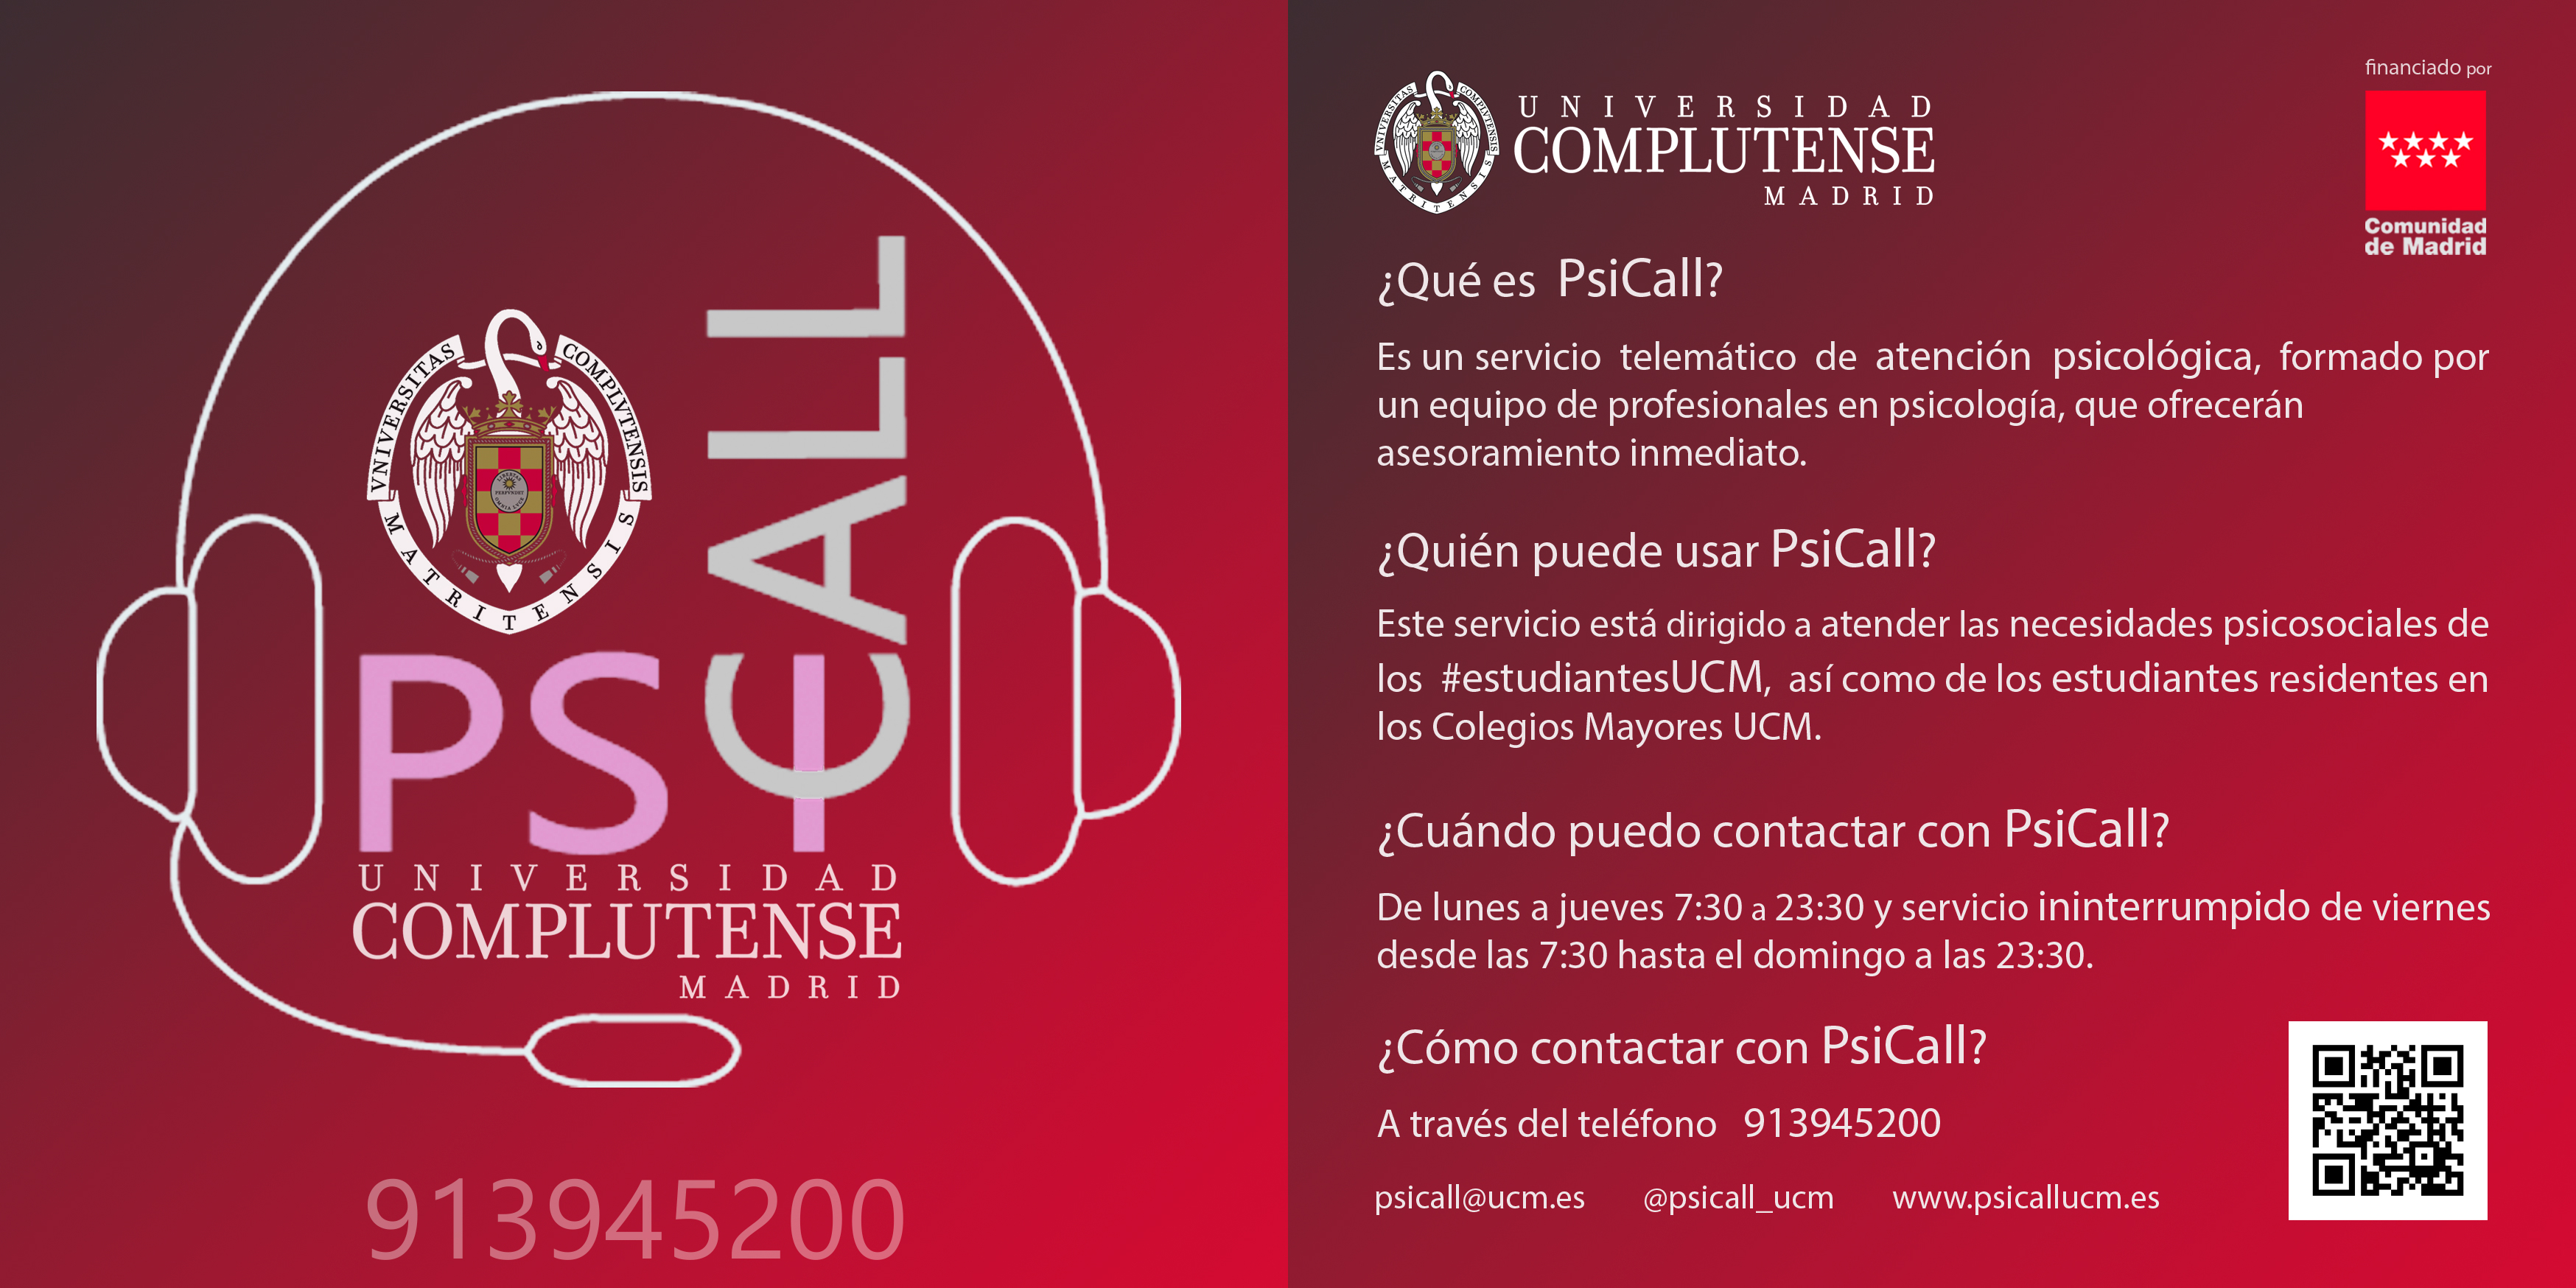 Servicio de ayuda psicológica gratuita Psicall UCM, dirigido a cubrir las necesidades psicosociales del estudiantado de la UCM